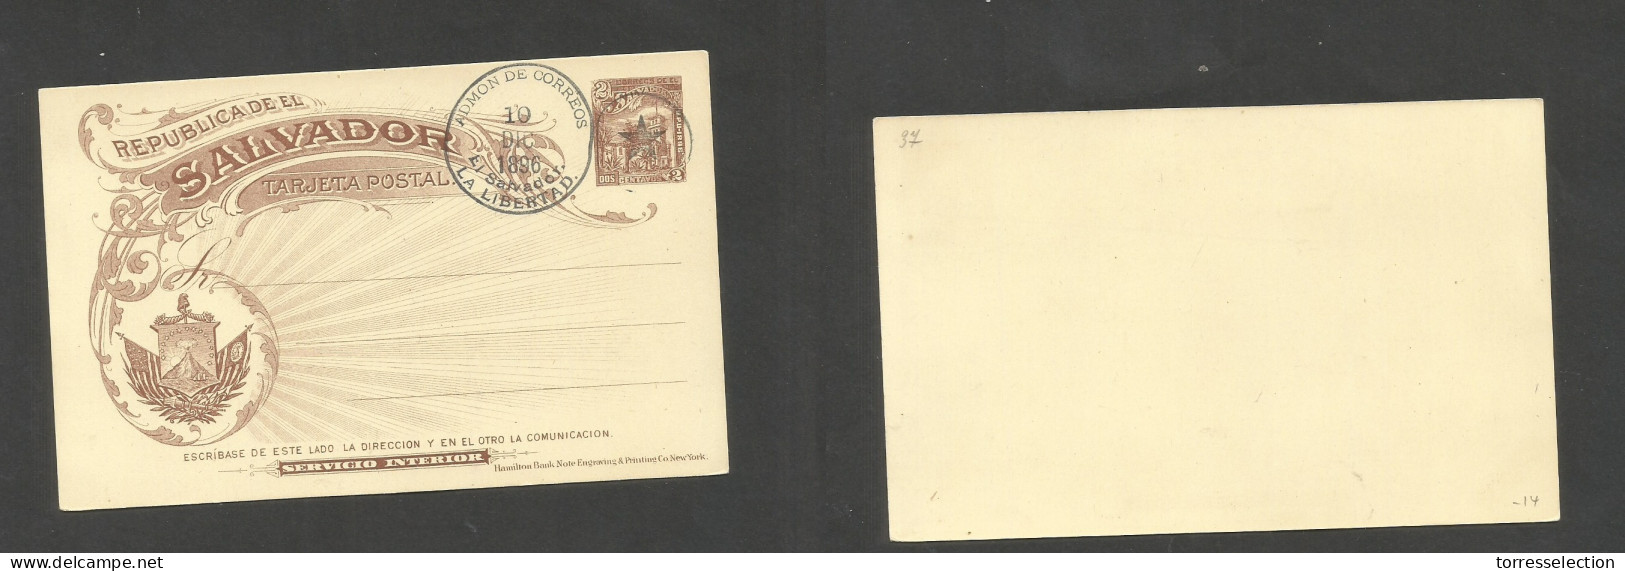 SALVADOR, EL. 1896 (10 Dec) 2c Lilac Precancelled (specimen) Stat Card. Servicio Interior. Fine Item + Scarce. SALE. - Salvador